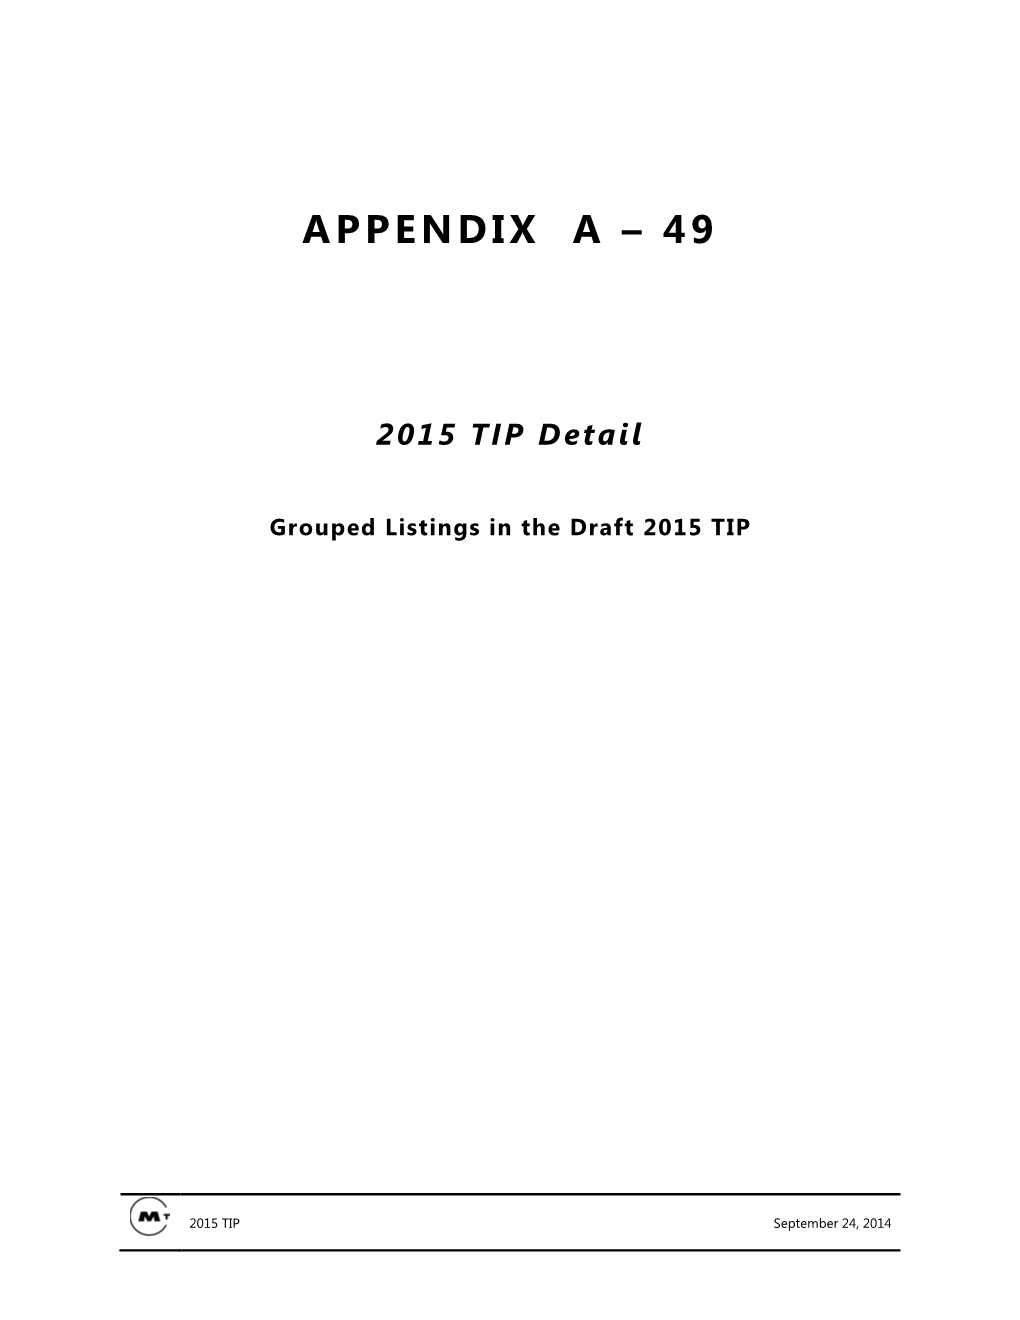 Appendix a – 49